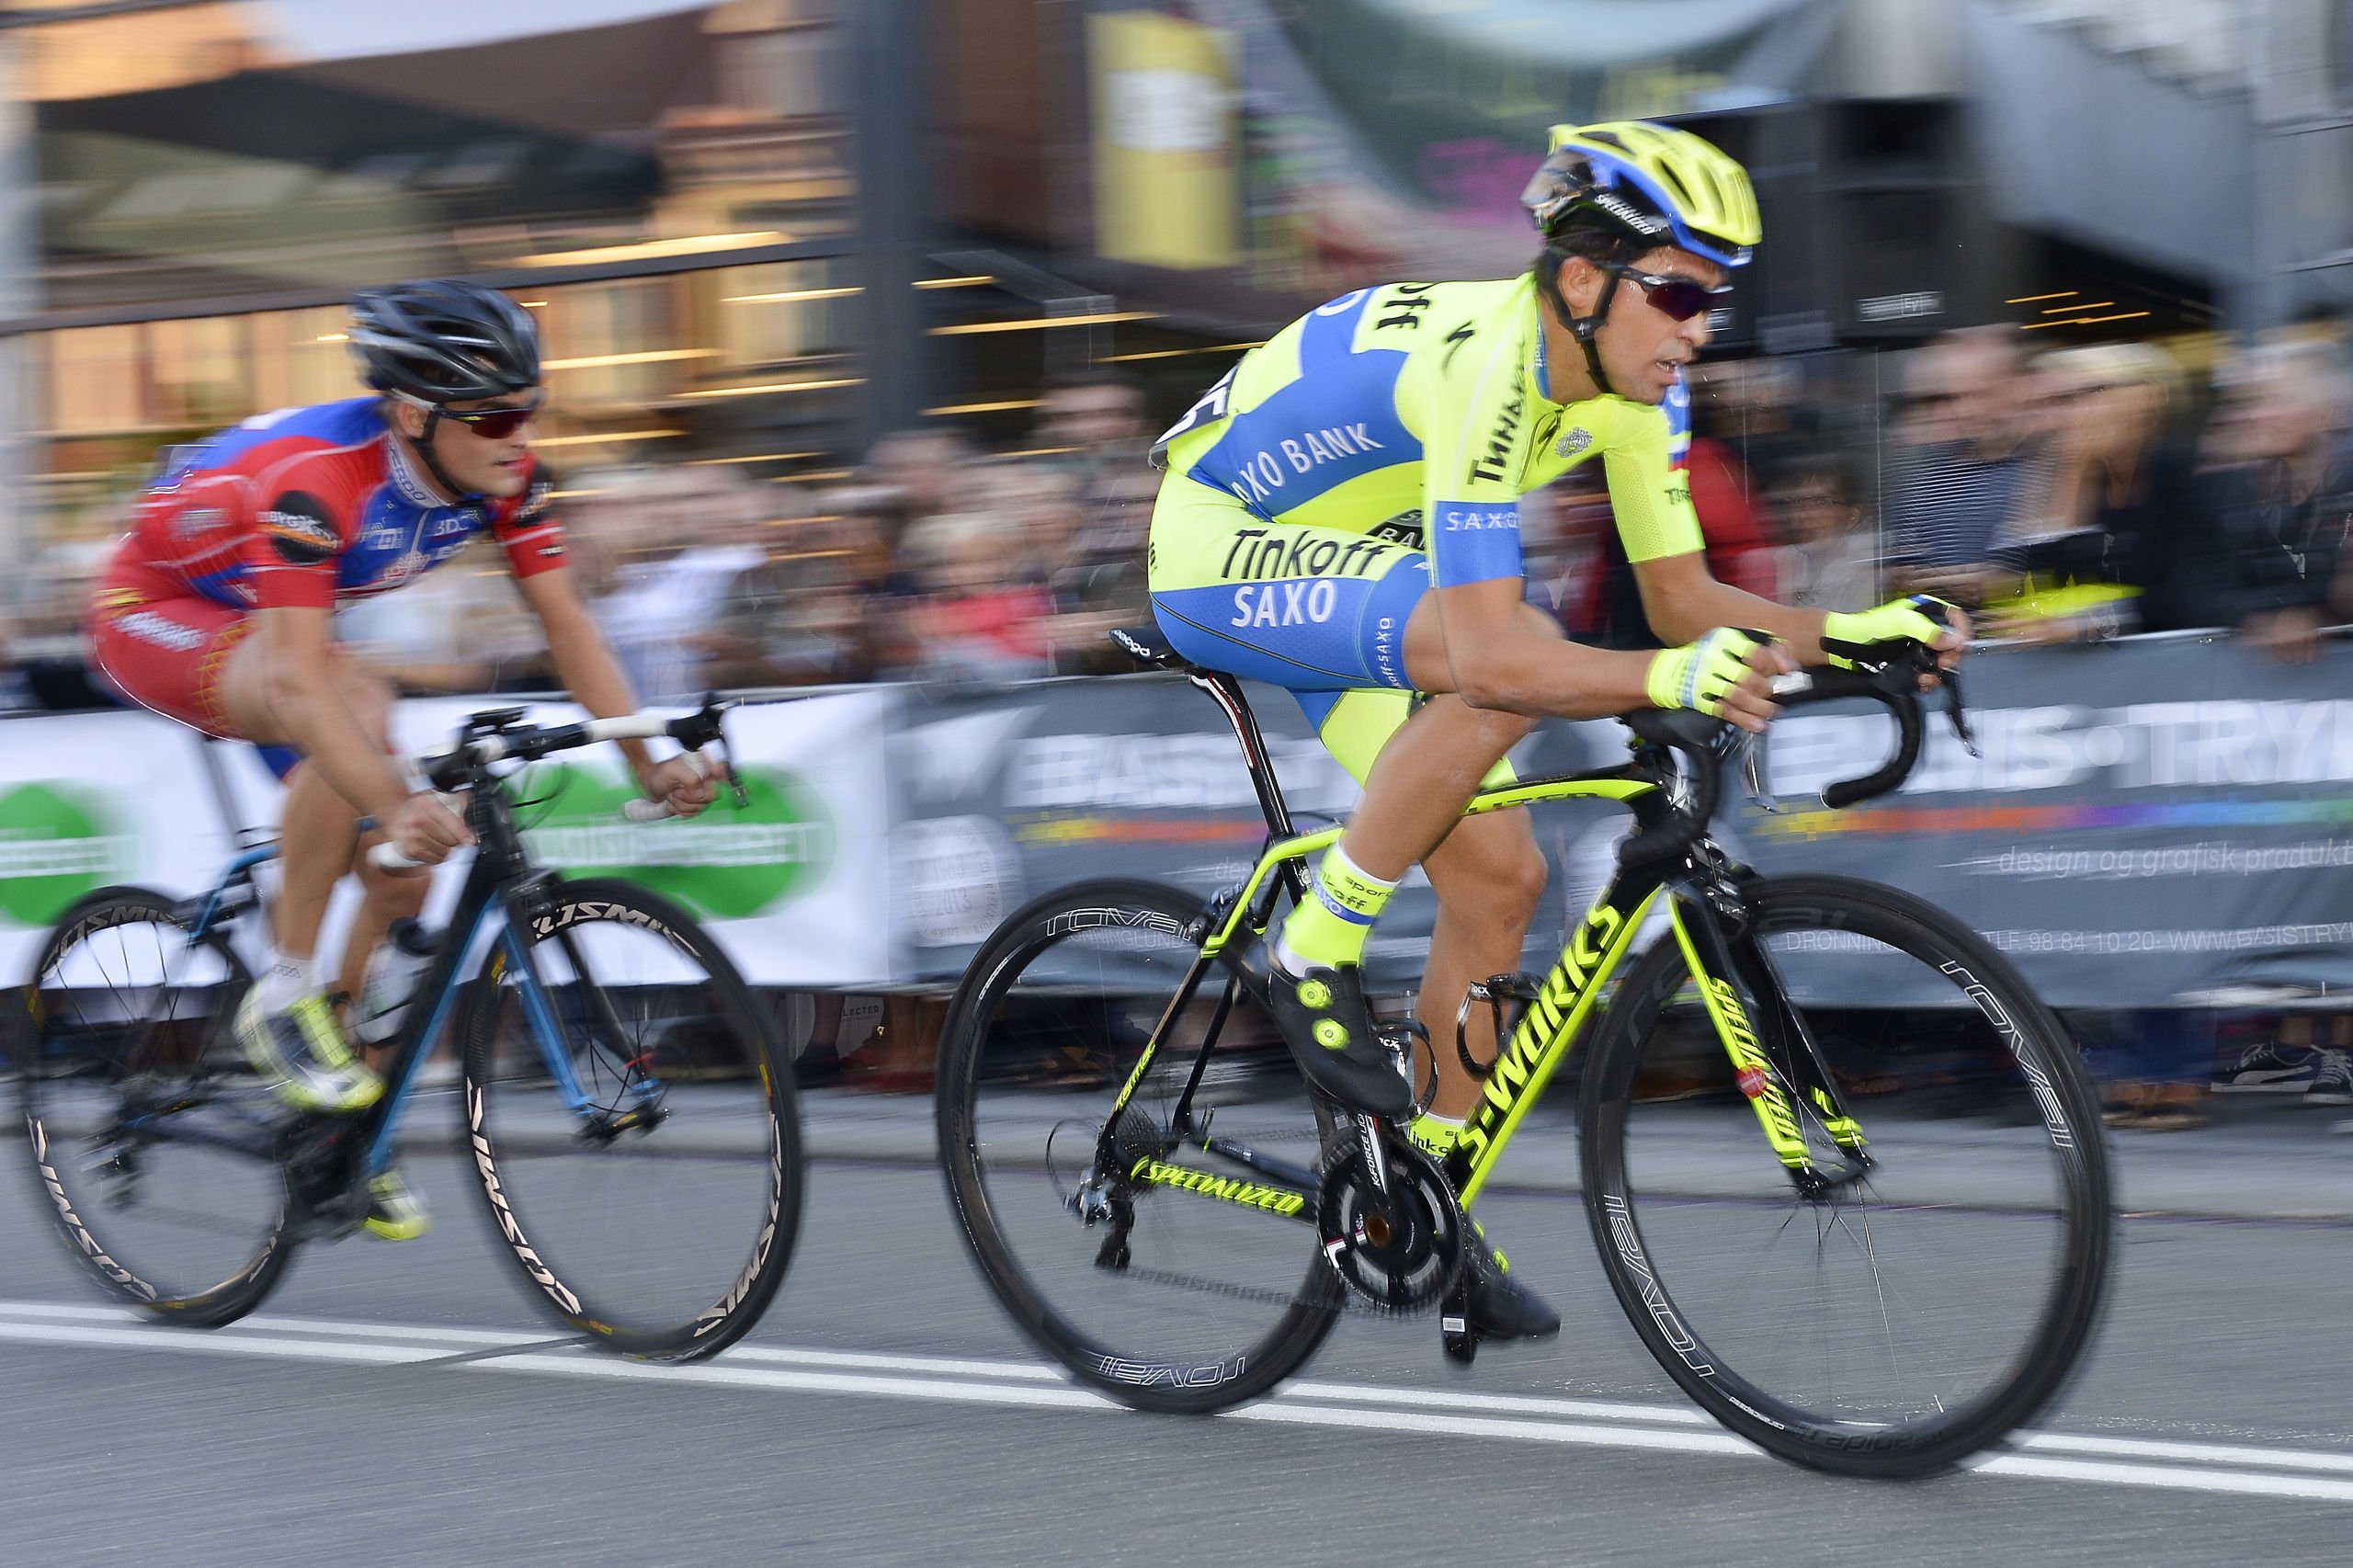 Anklage: Contador skulle vinde i Aalborg